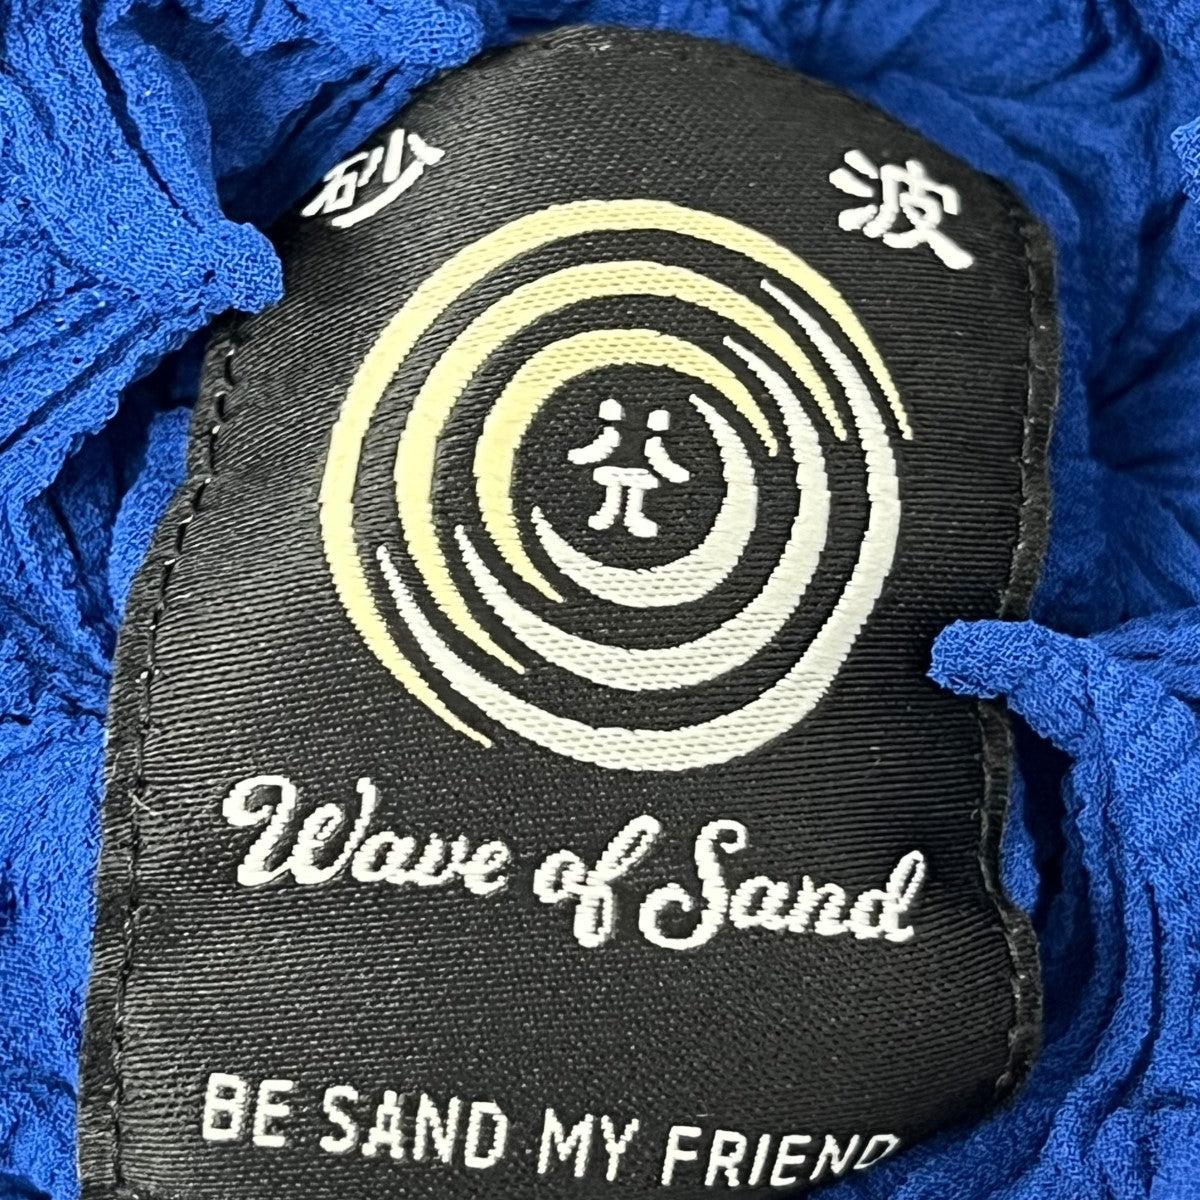 Wave of Sand(ウェーブオブサンド) SHIBORI SUN TOP Tシャツ T-403 ...